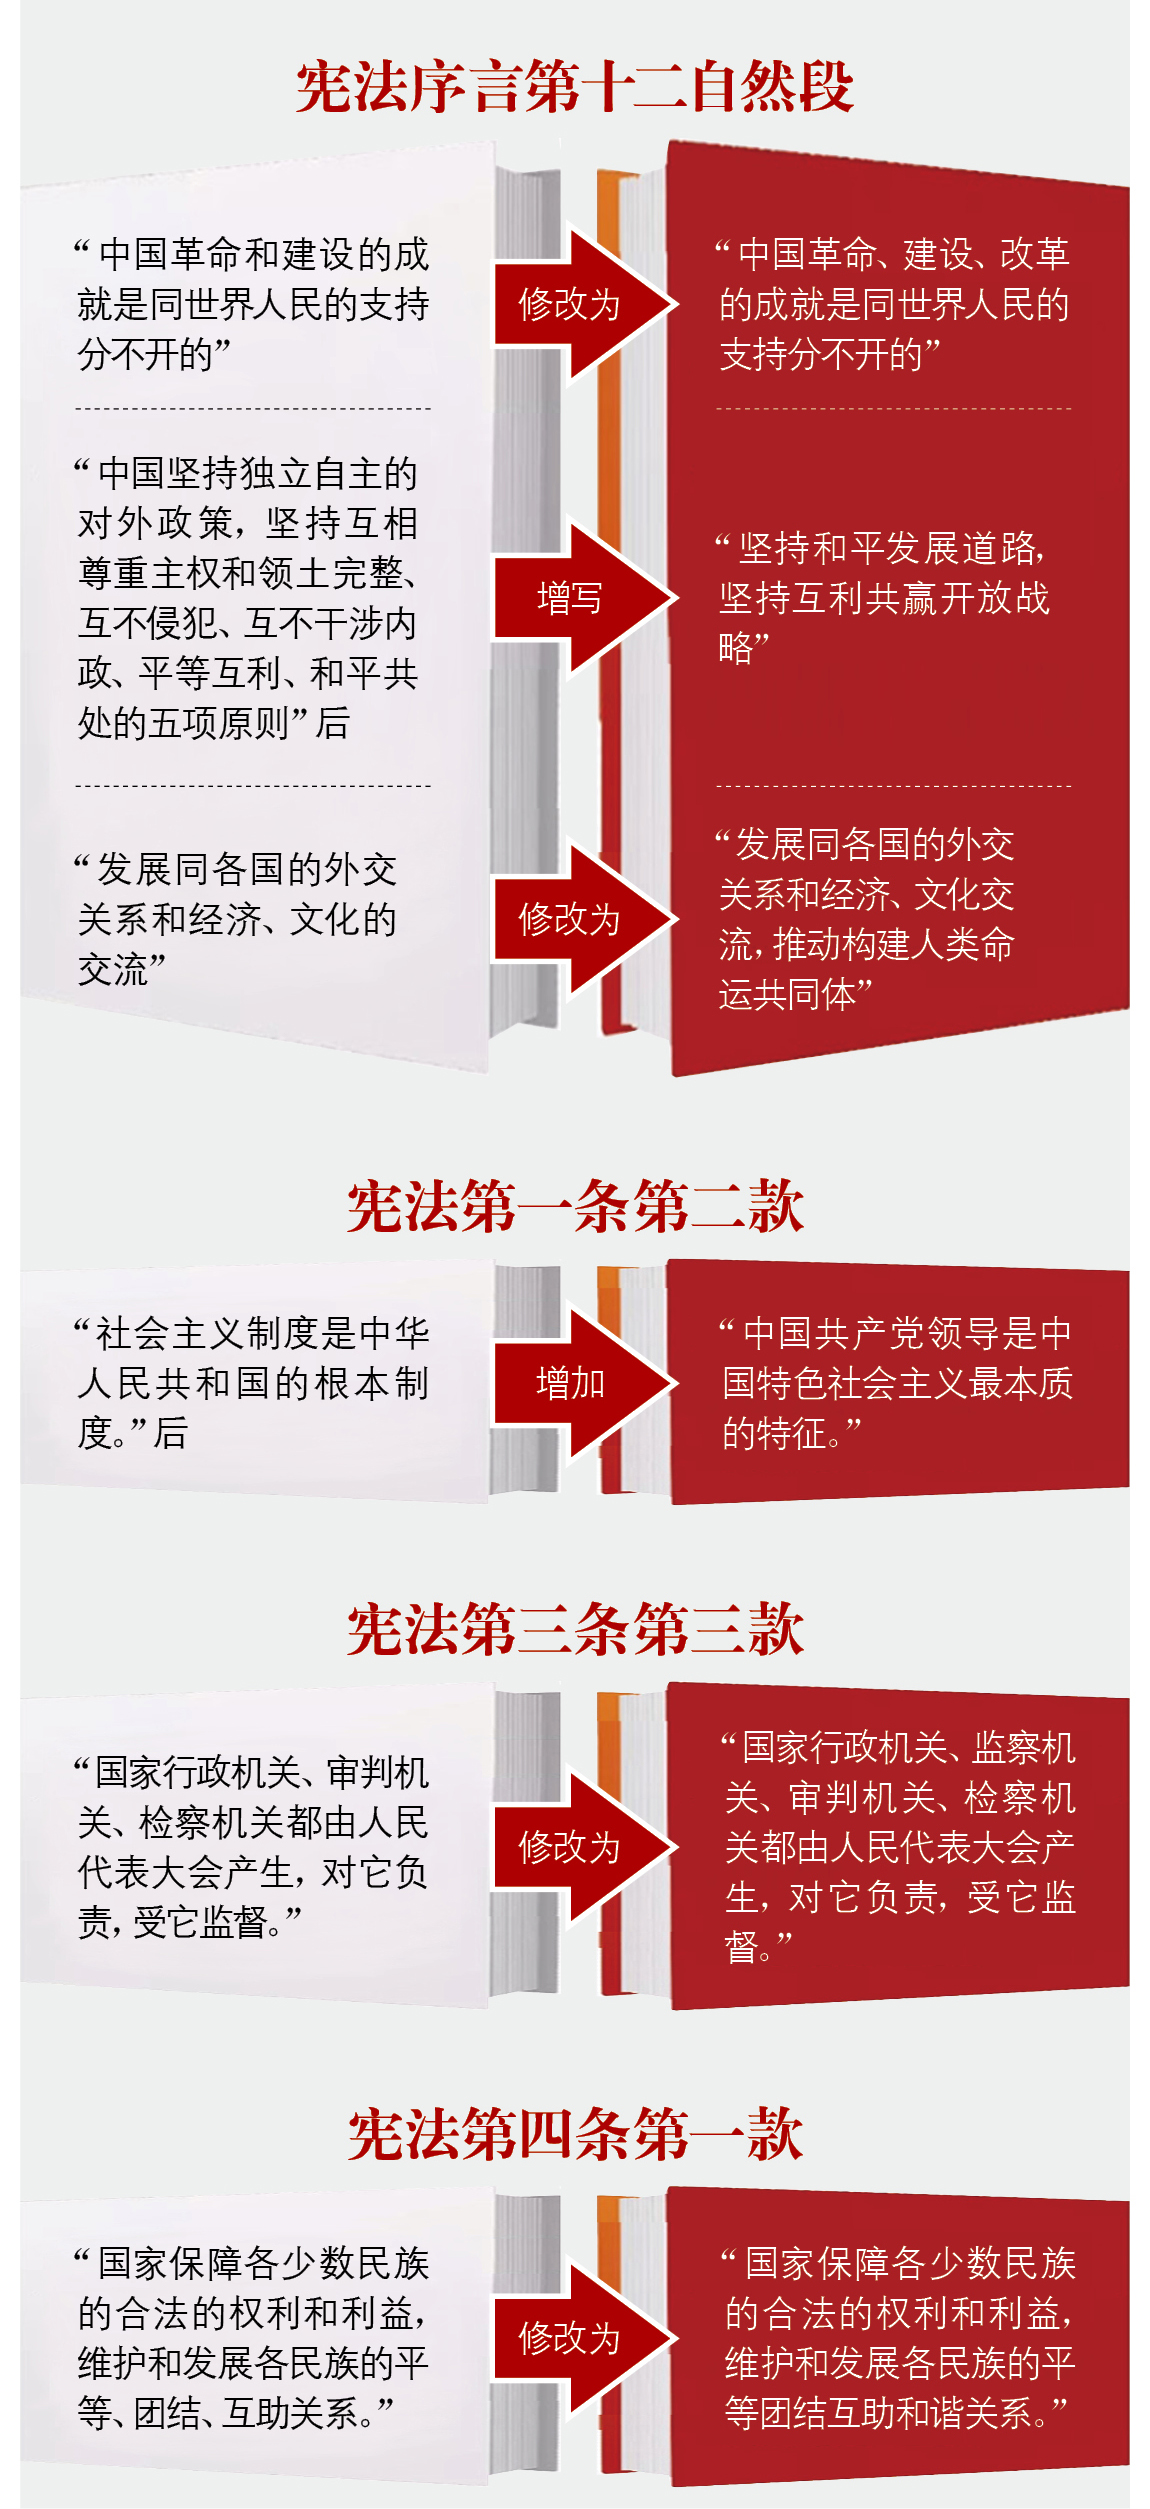 一图看懂《中华人民共和国宪法修正案》|声明